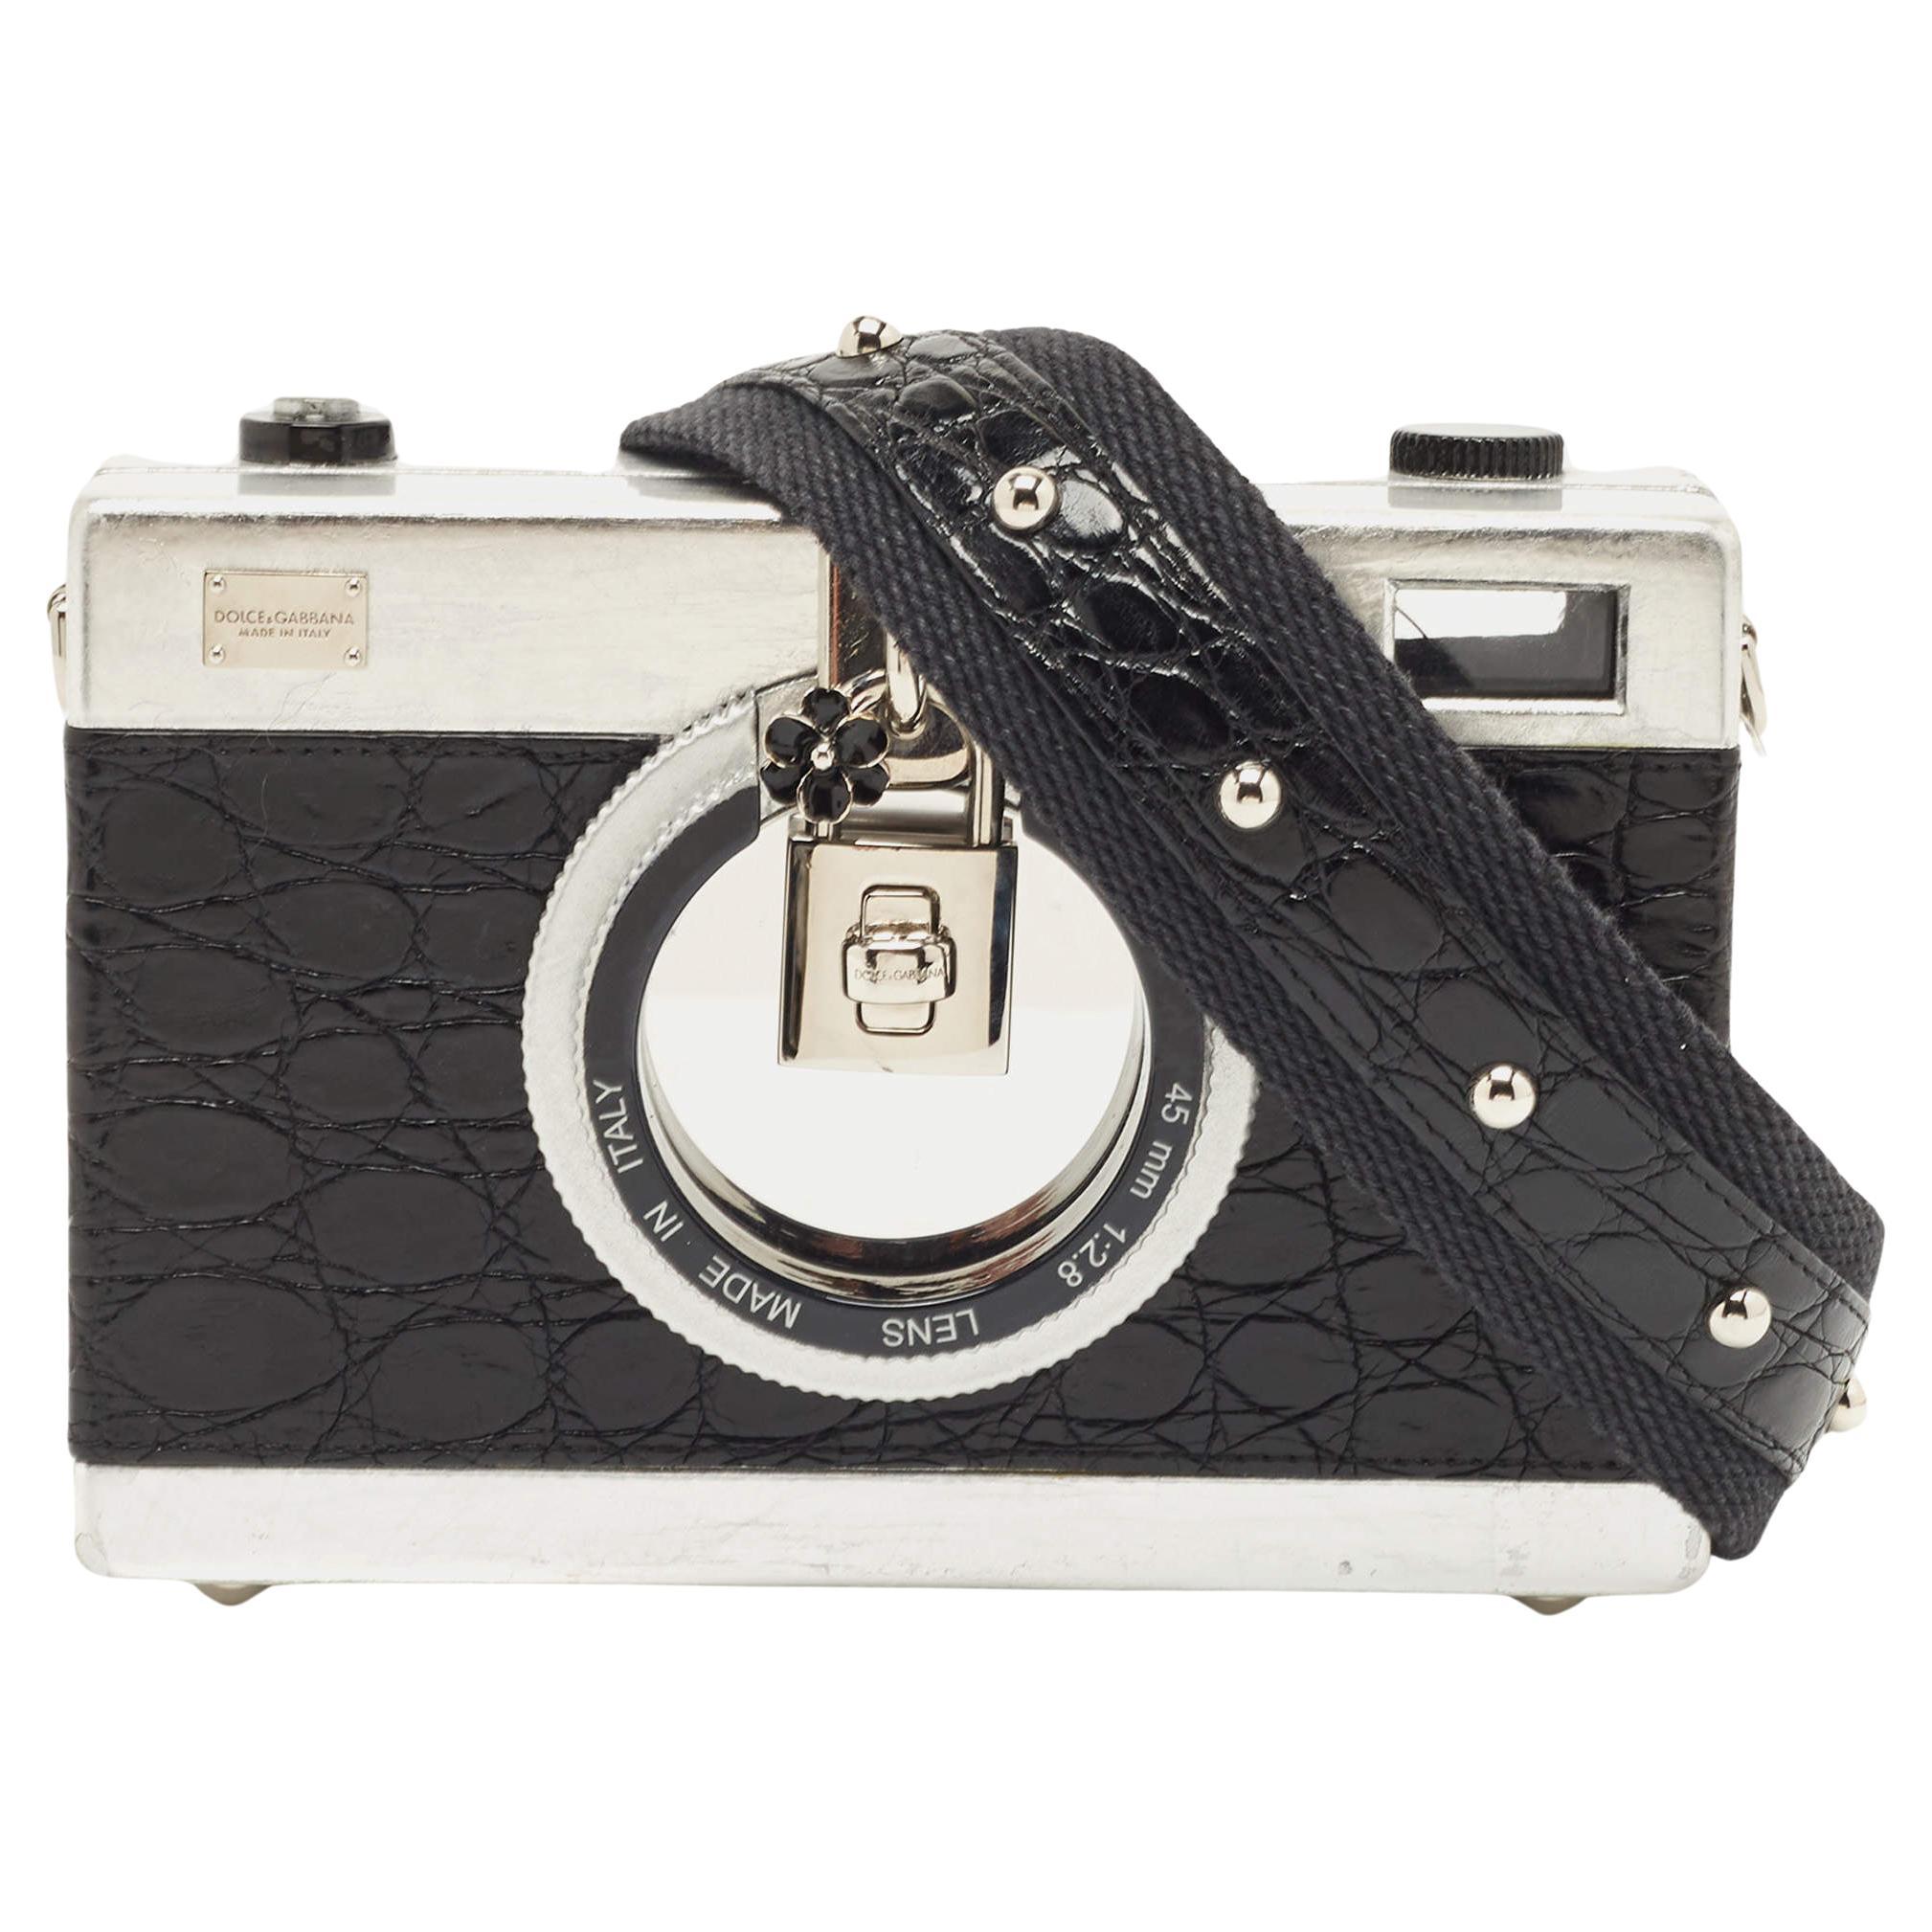 Dolce & Gabbana Black/Silver Croc Embossed and Leather Camera Case Shoulder Bag